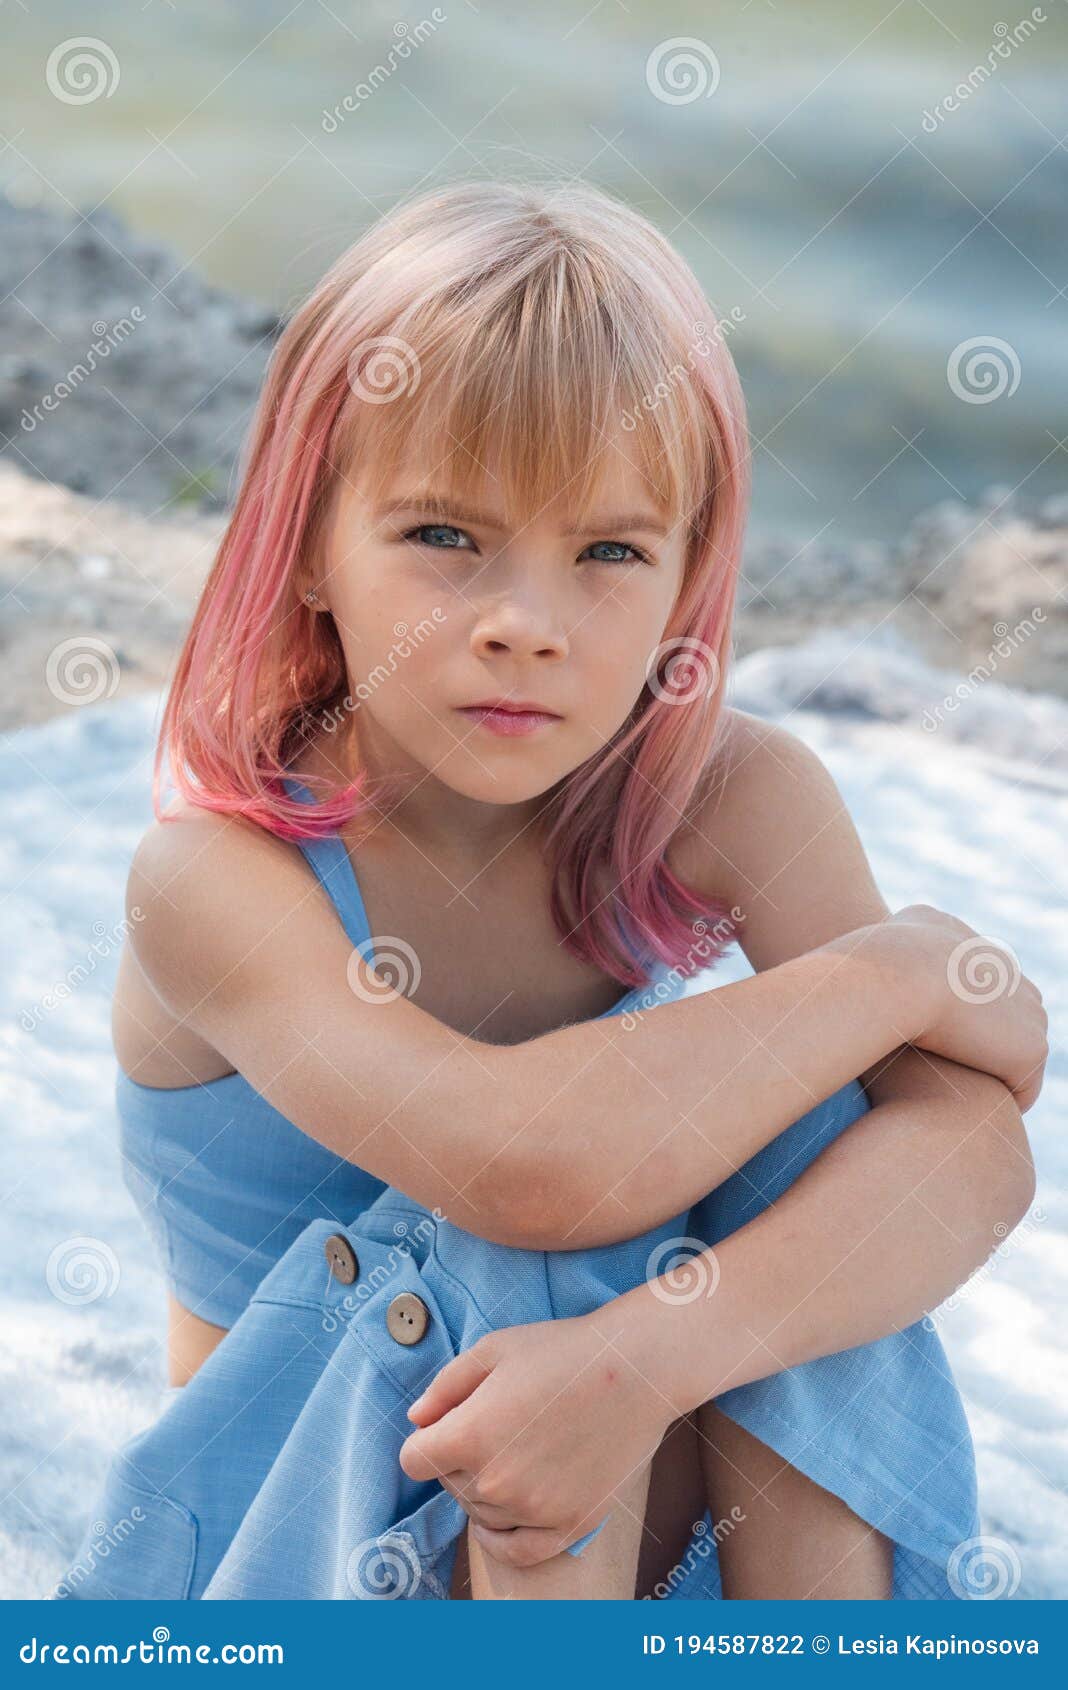 Cute Child Girl Portrait . Outdoor Portrait of Cute Little Girl in ...